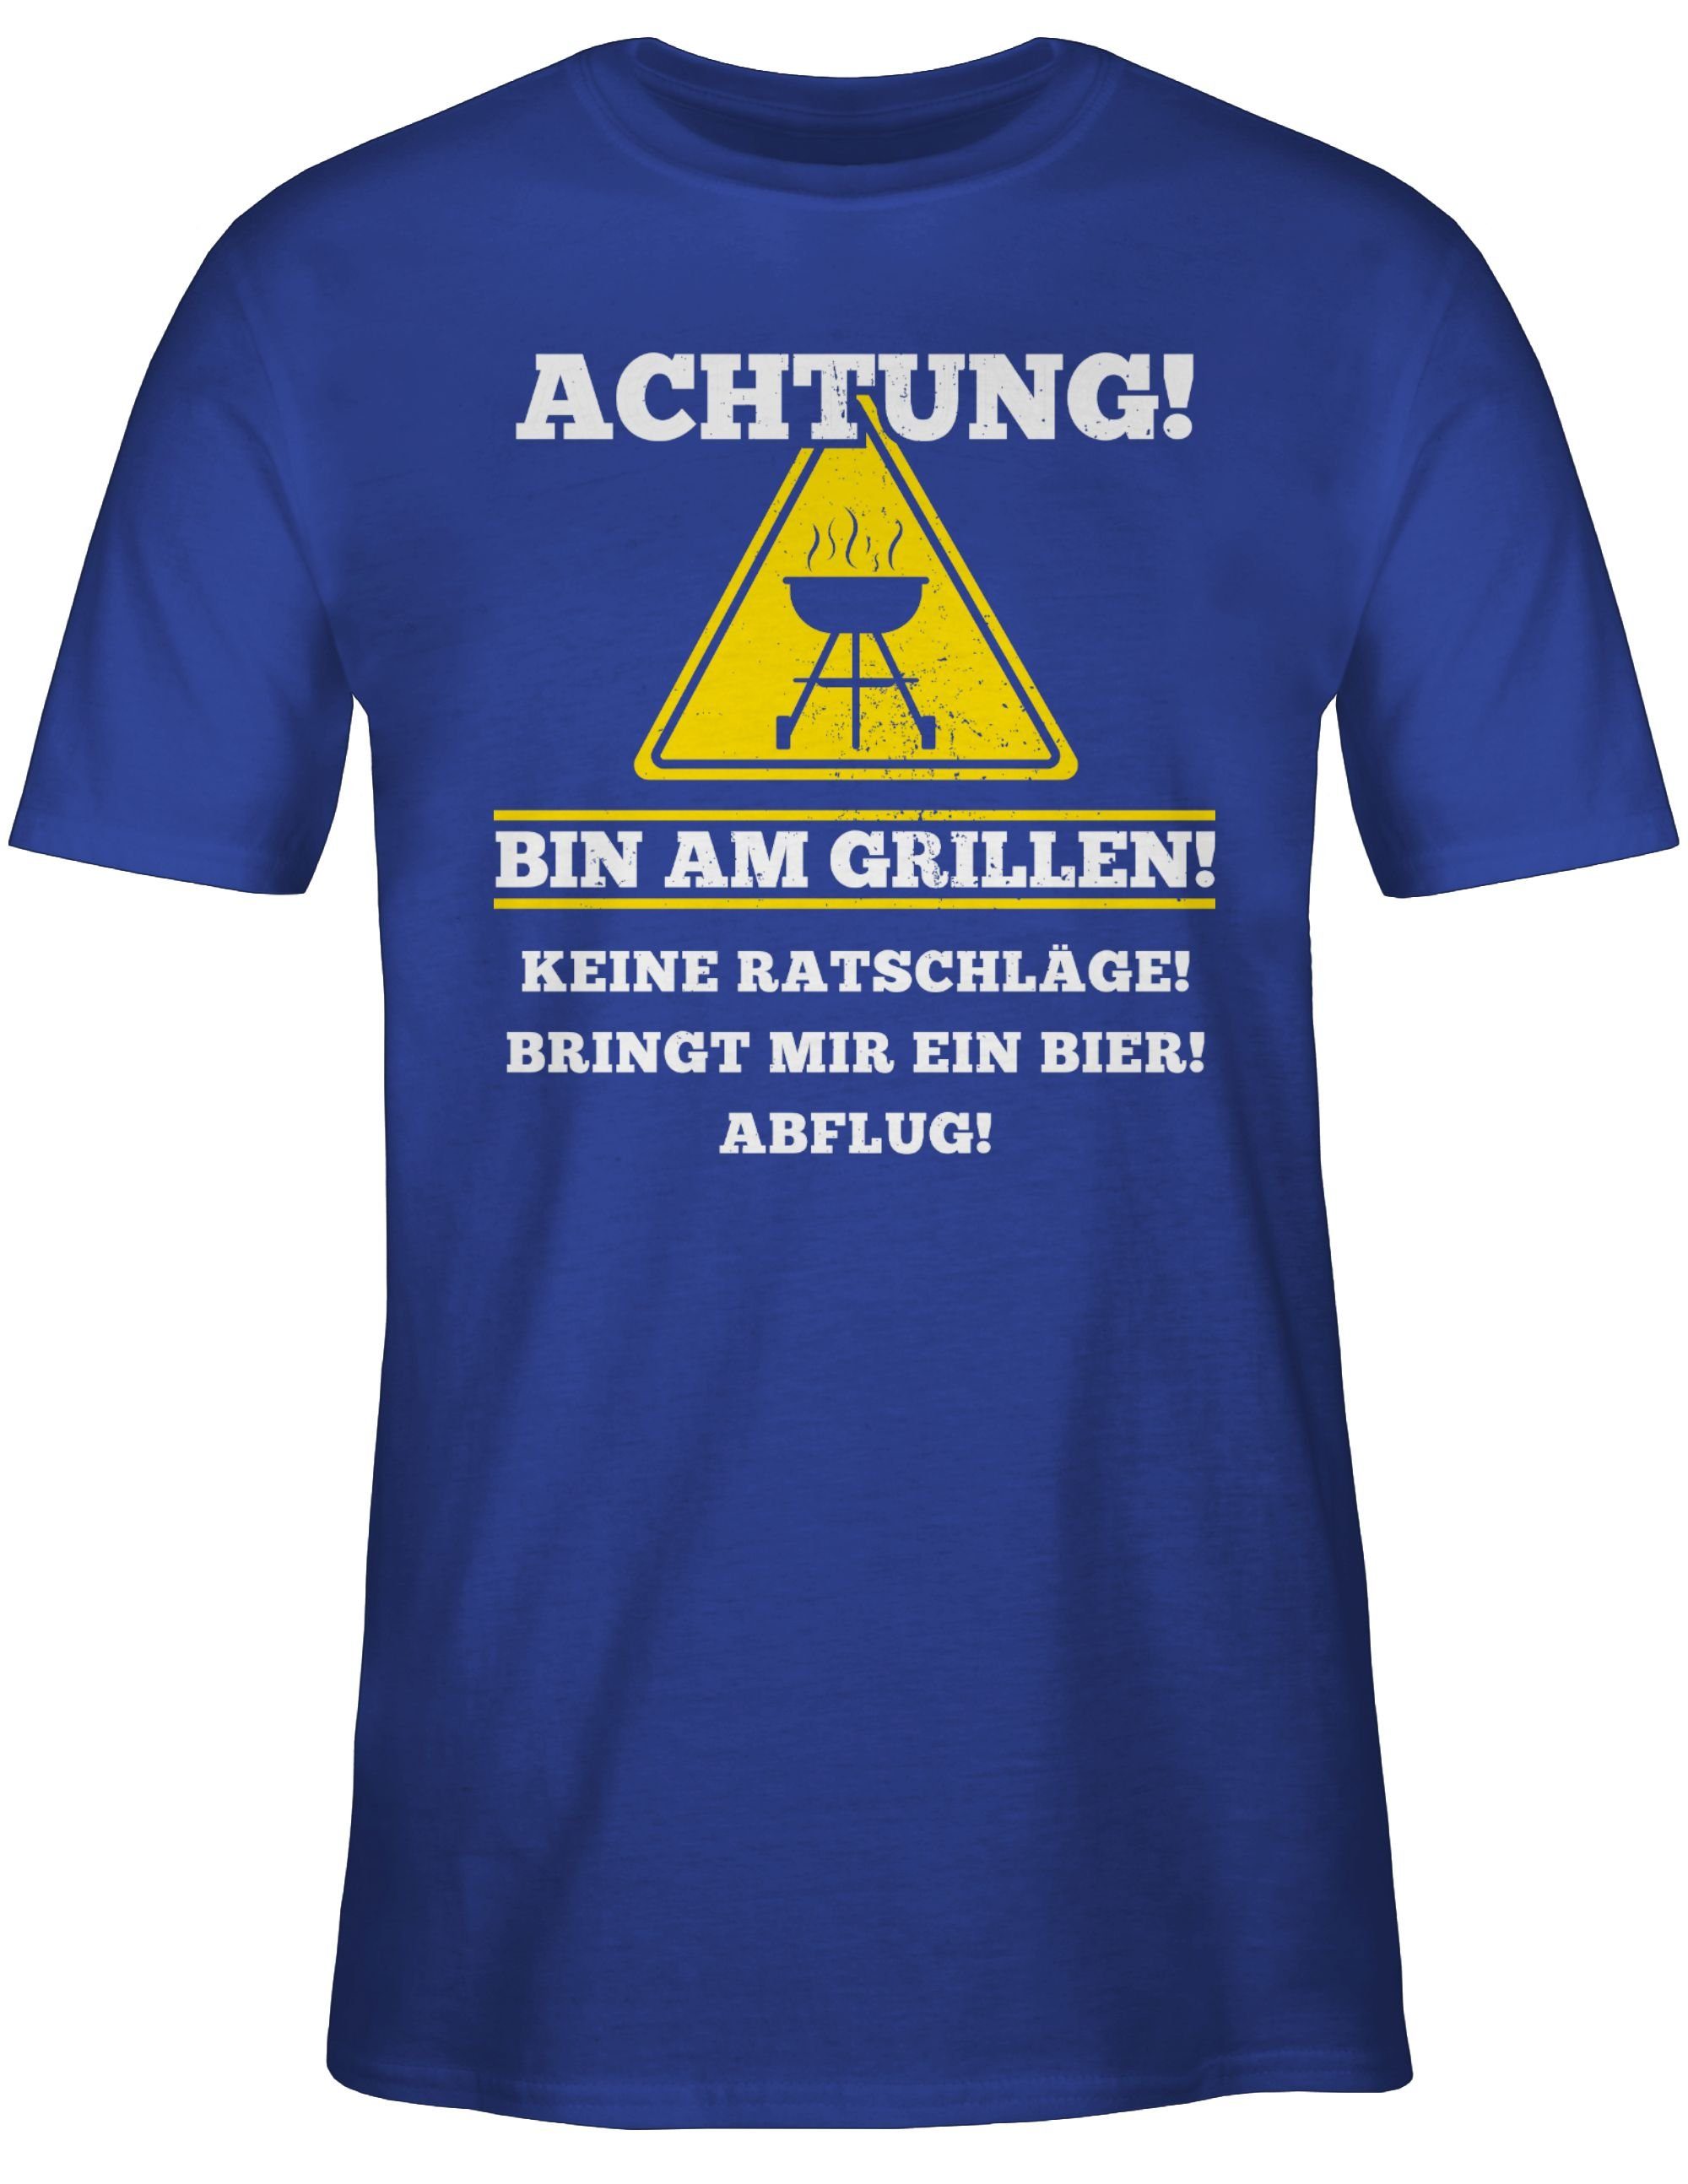 Grillen T-Shirt 3 Royalblau Bin am Grillzubehör Geschenk Shirtracer & Grillen